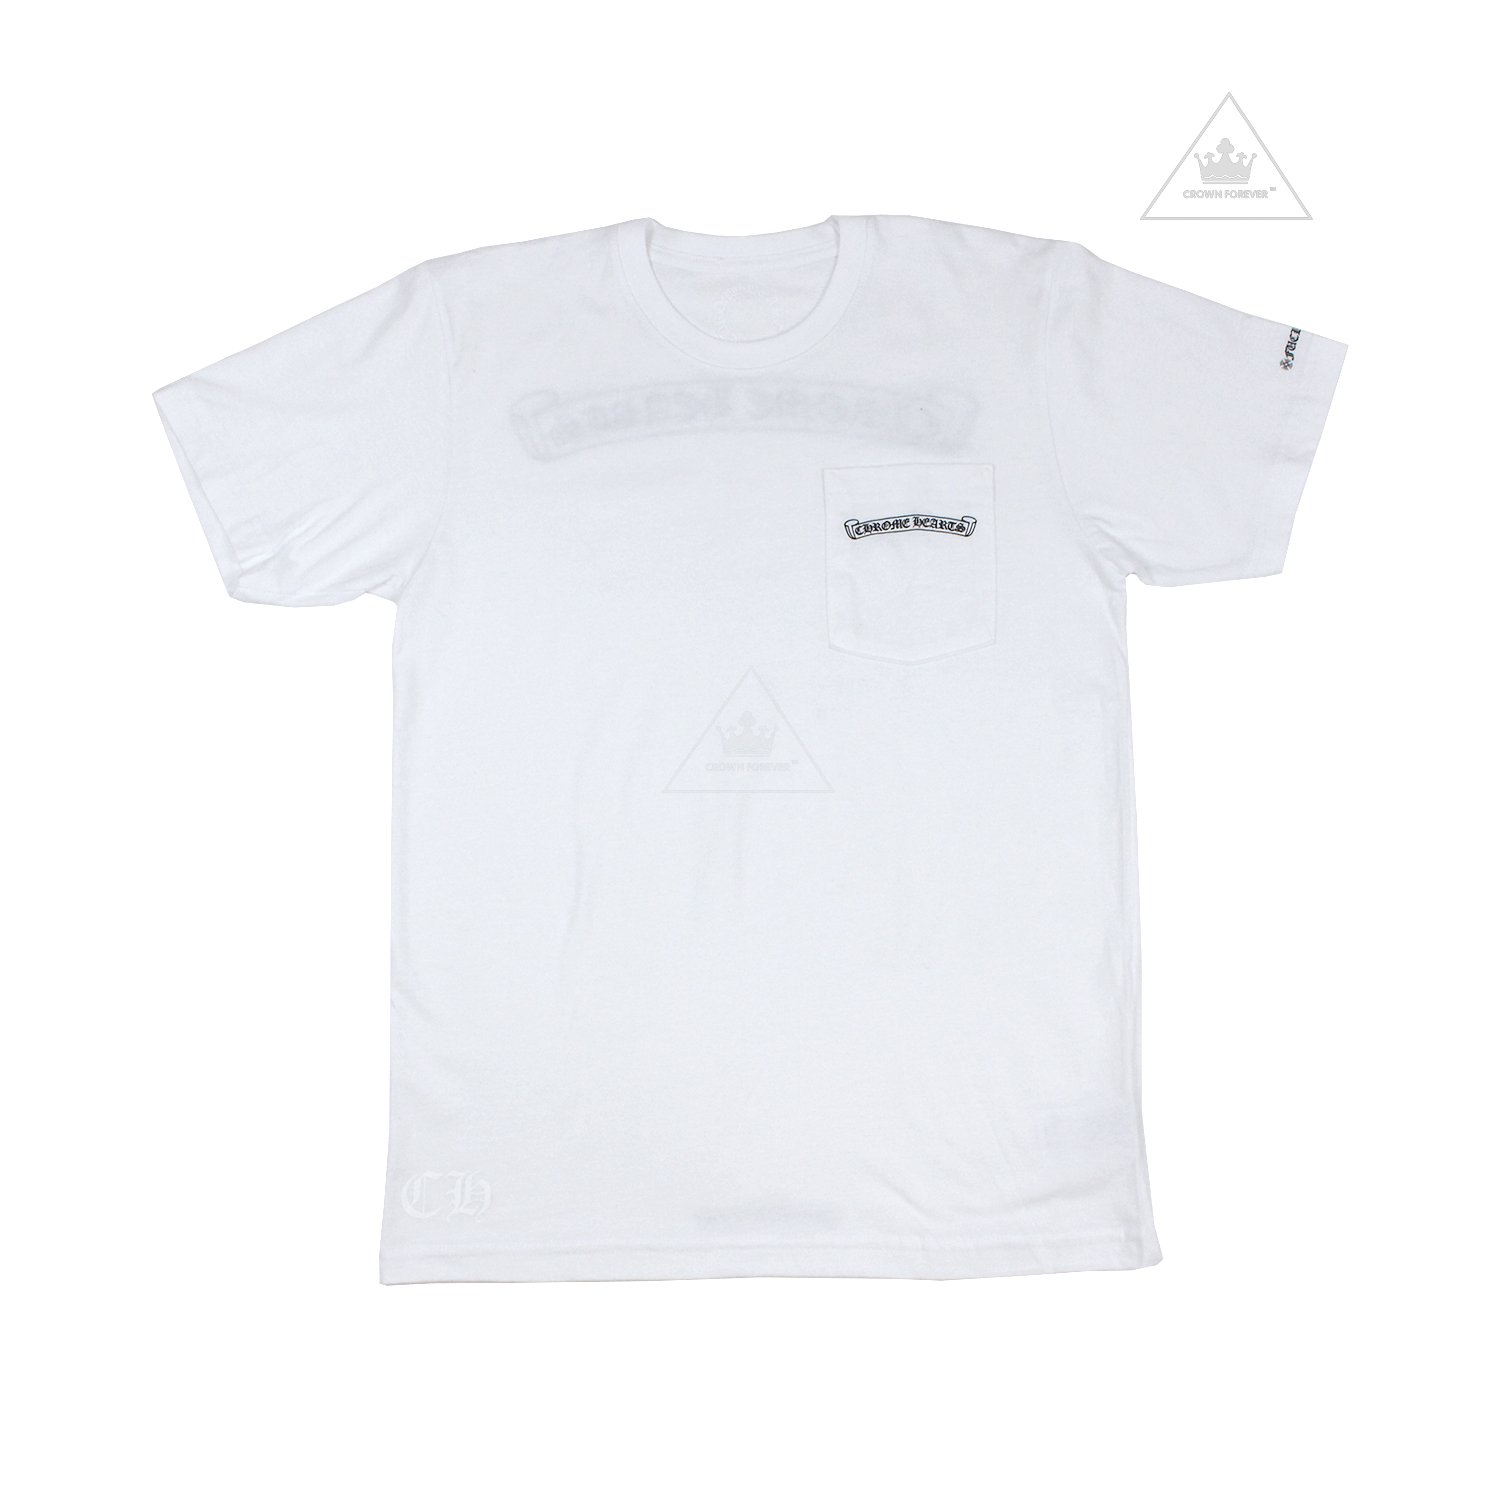 【クロムハーツCH】スクロールラベルホワイトTシャツ - 海外ブランド・ファッション通販【GXOMENS】